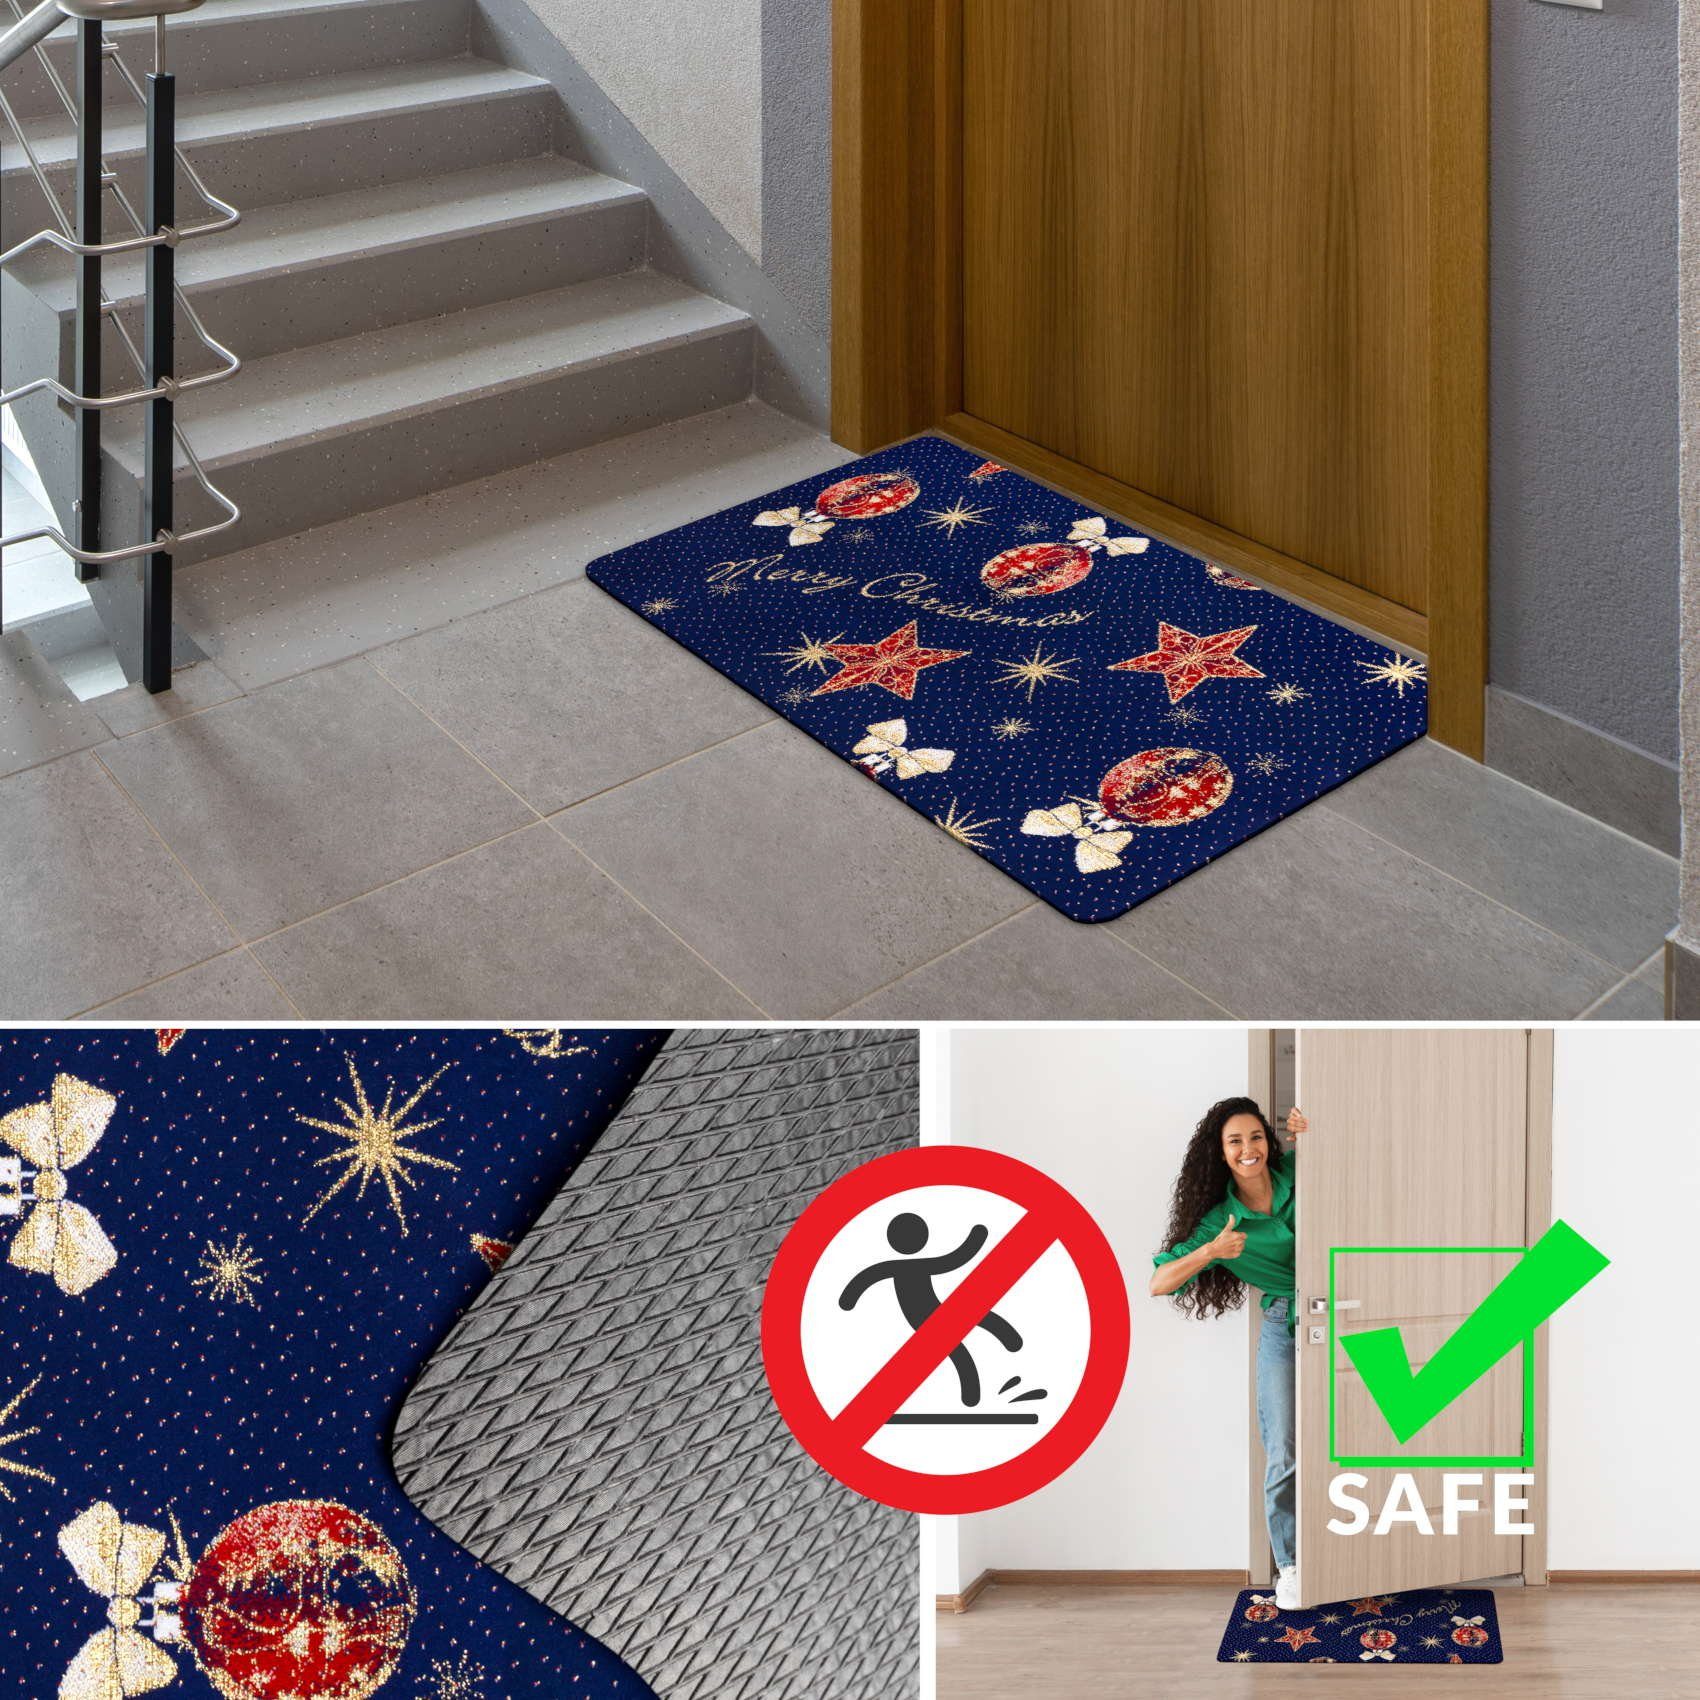 Textil Höhe: Flurläufer Rechteckig, Fußmatte Textil mm, Fußmatte 3 Teppichvorleger Küchenläufer Weihnachten, ANRO,